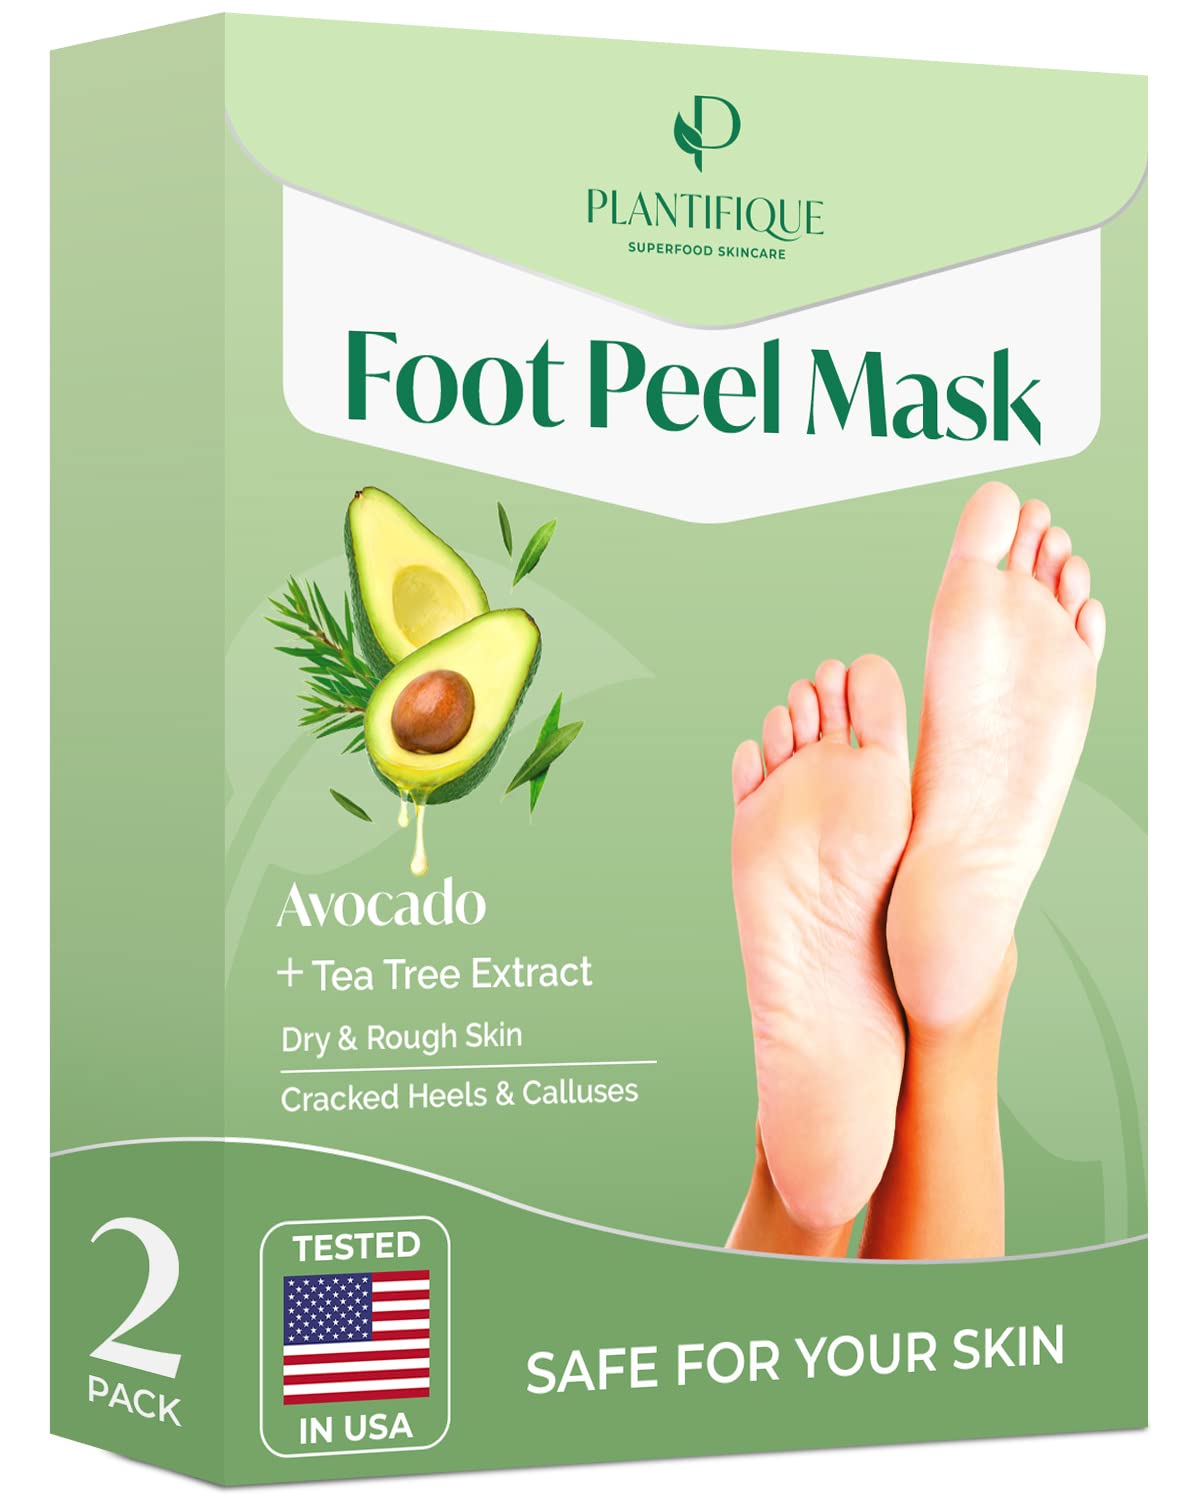 Baby Foot - Original Foot Peel Exfoliator For Men - Foot Peel Mask - Repair  Rough Dry Cracked Feet and remove Dead Skin, Repair Heels and enjoy Baby